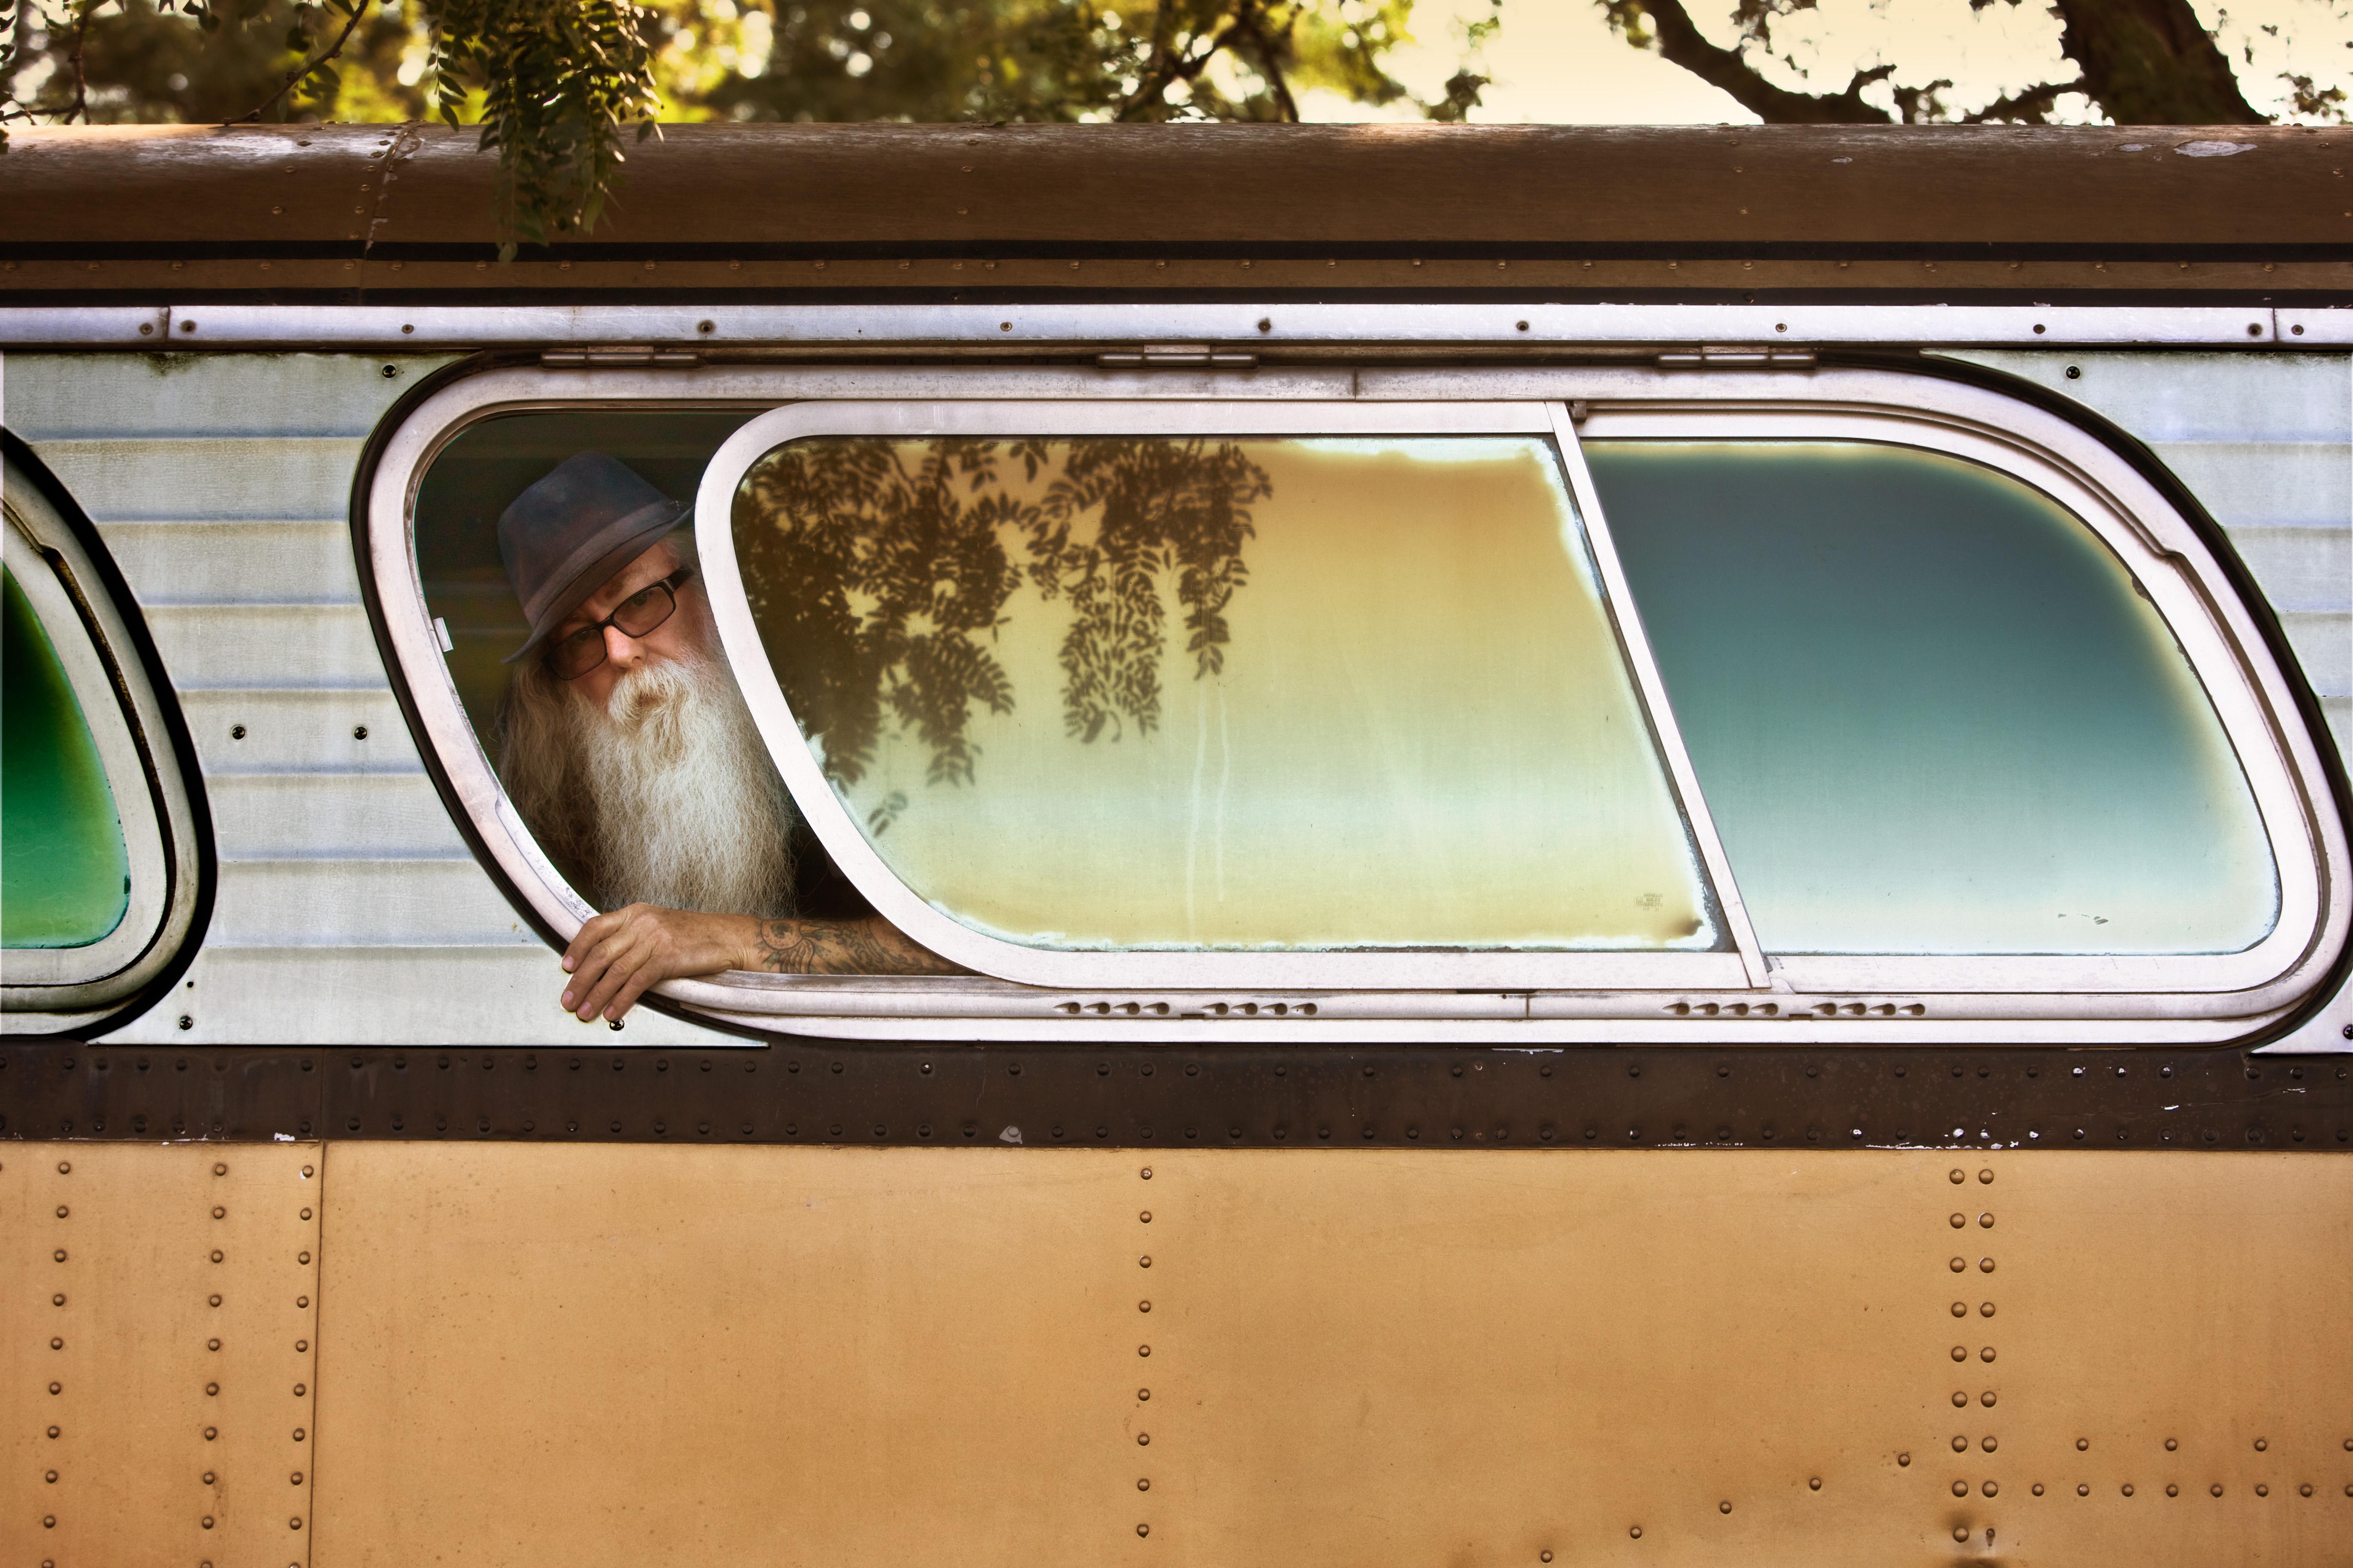 Nick Vedros Figurative Photograph – Mann auf einem Bus